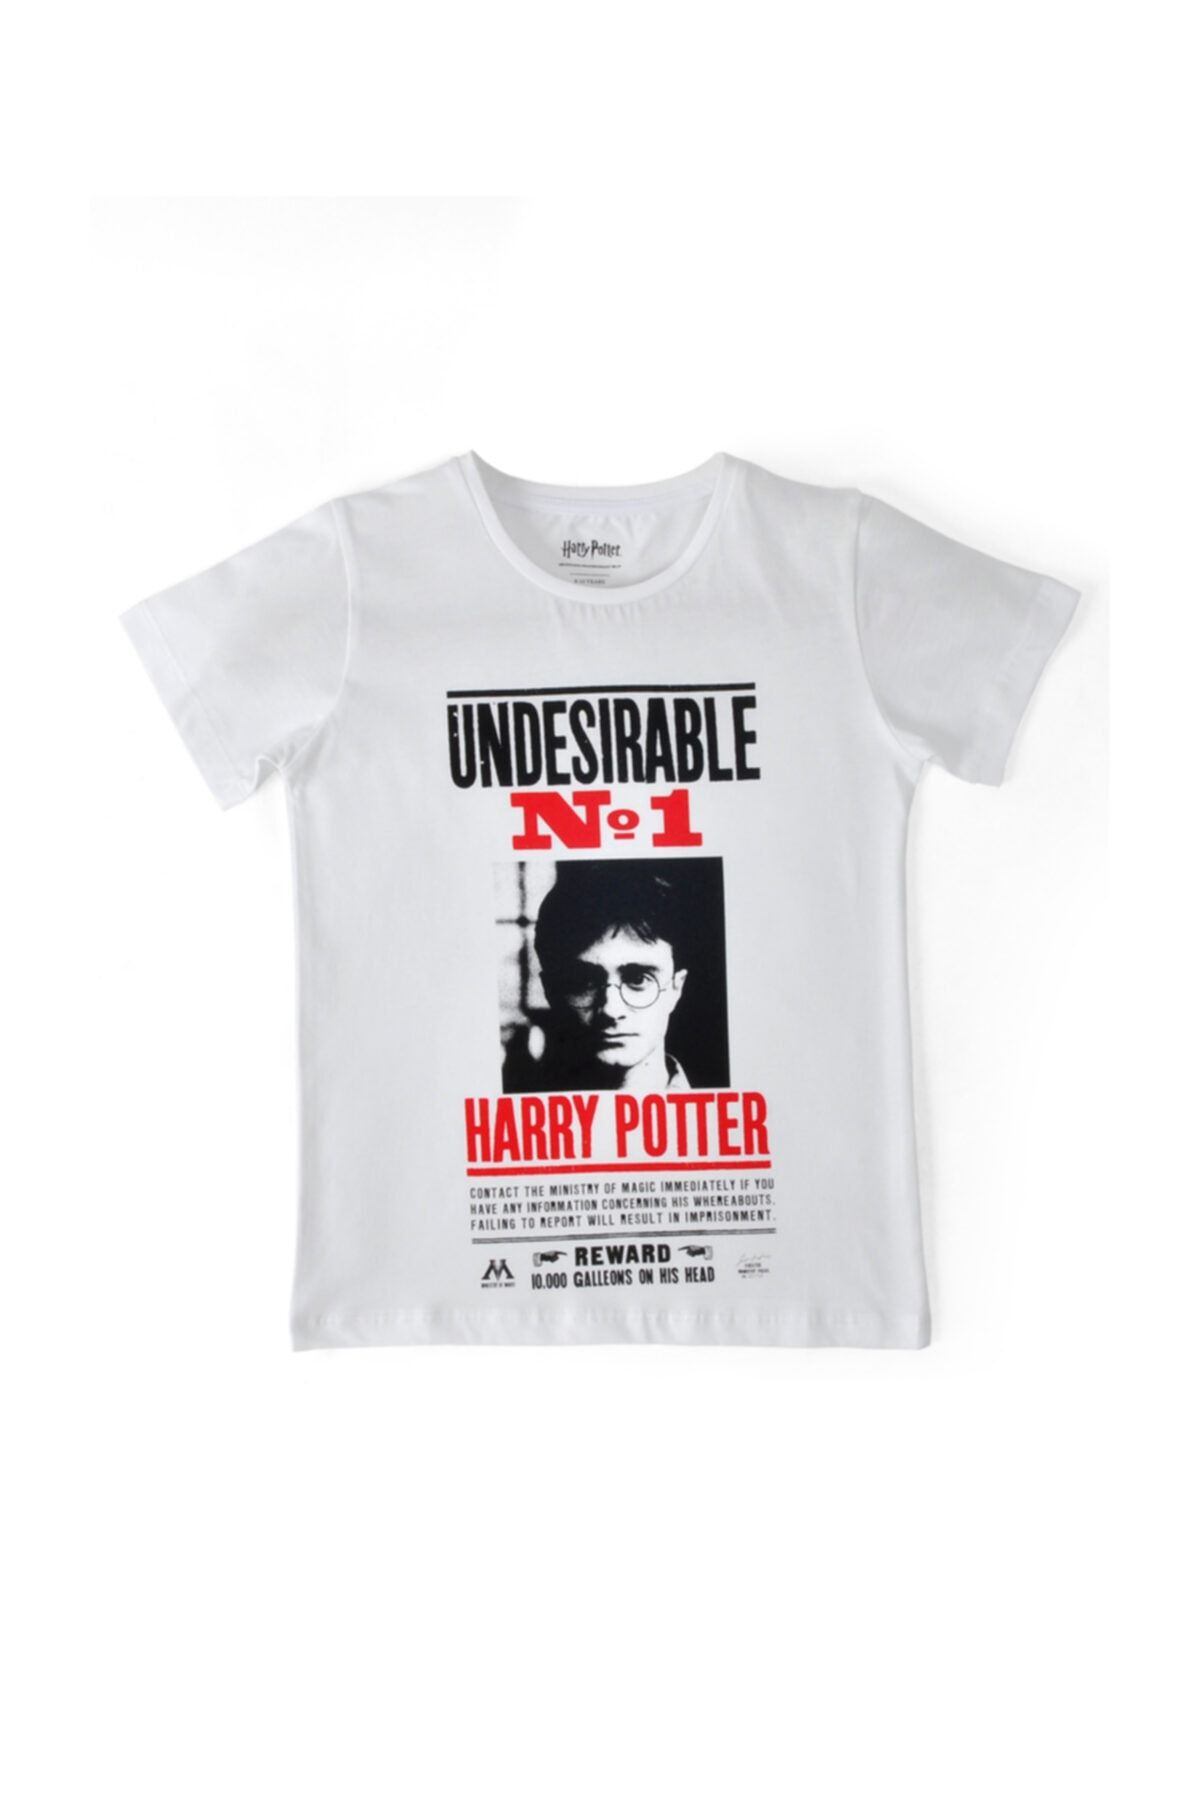 Dogo Çocuk Vegan Beyaz T-shirt - Harry Potter Undesirable No1 Tasarım